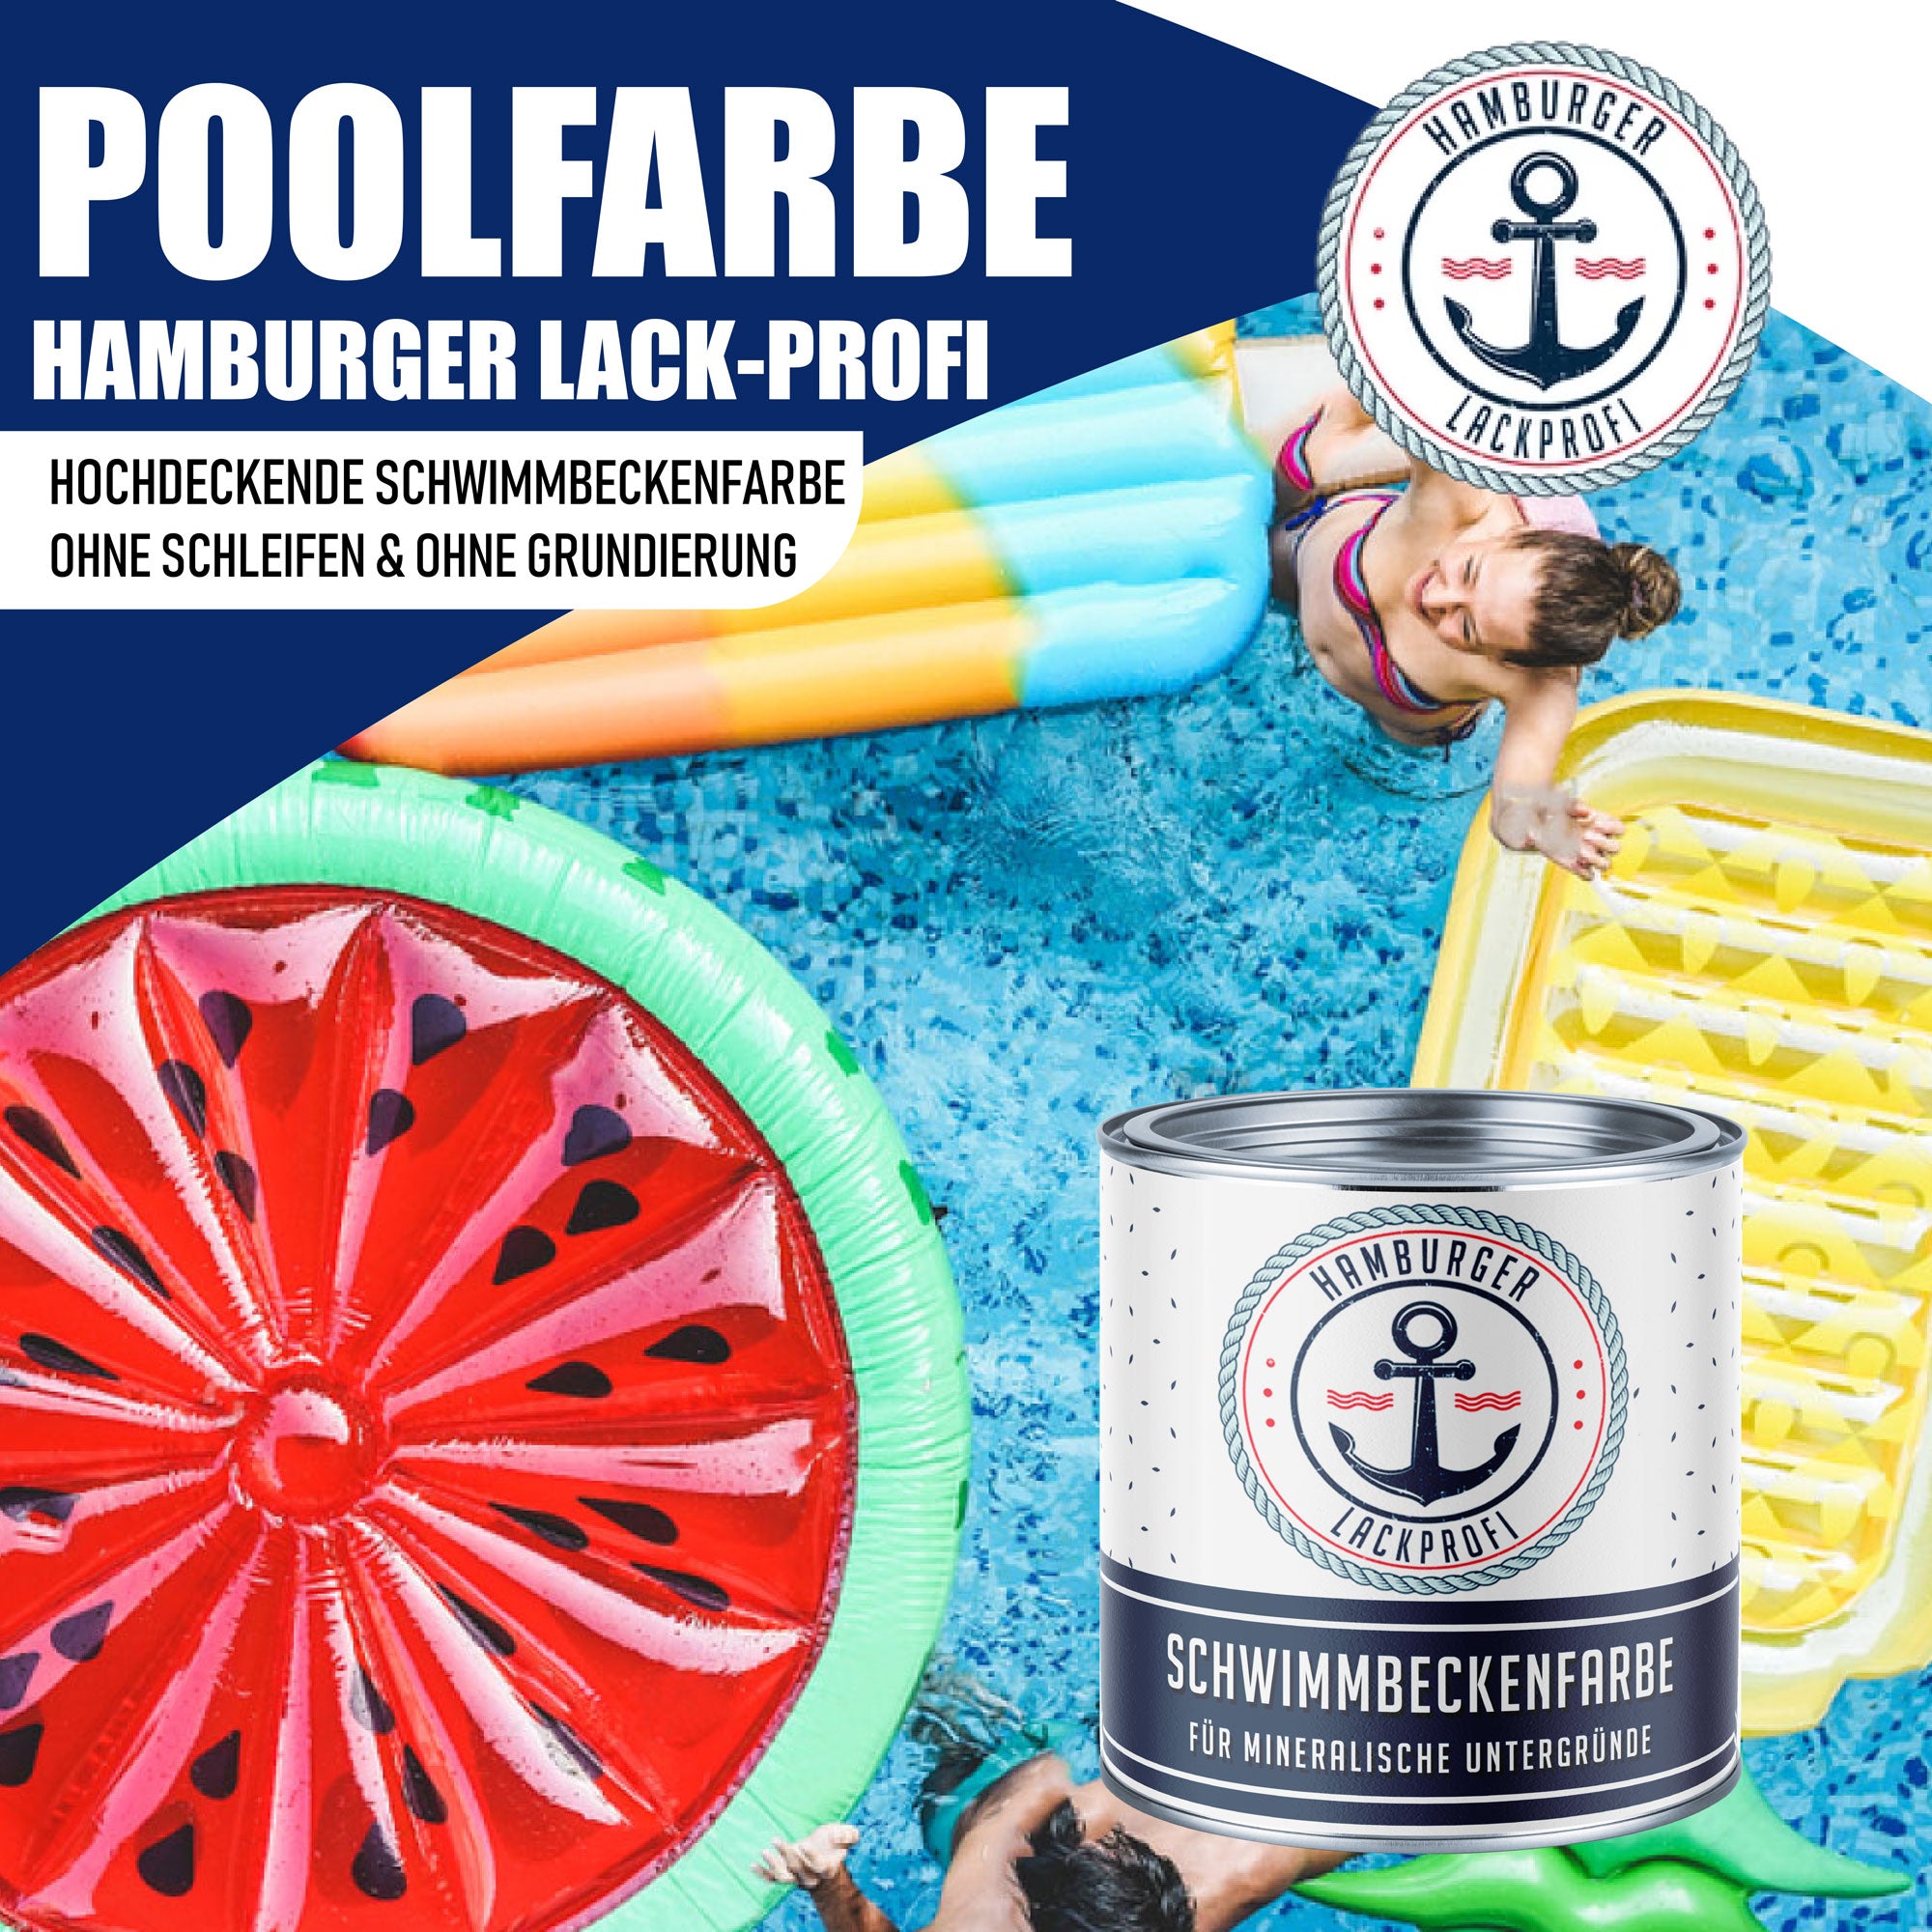 Hamburger Lack-Profi Schwimmbeckenfarbe Gelborange RAL 2000 - hochdeckende Poolfarbe